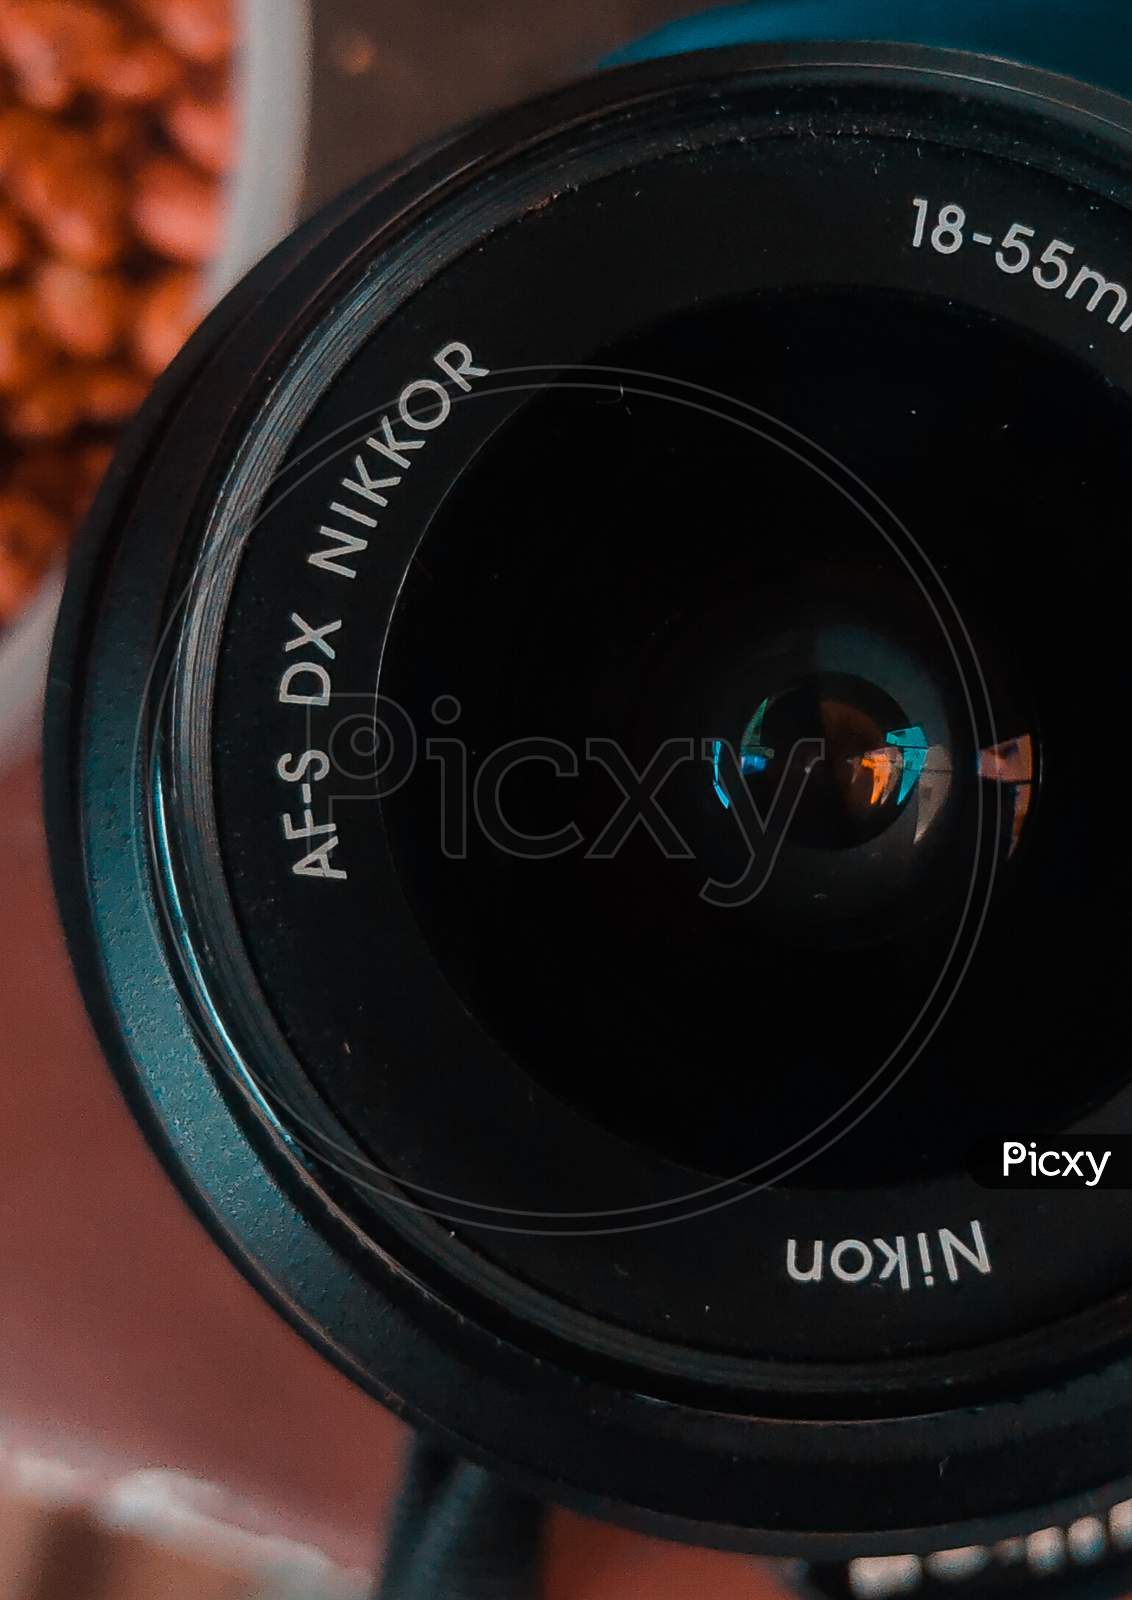 Nikkor dx camera lens close up